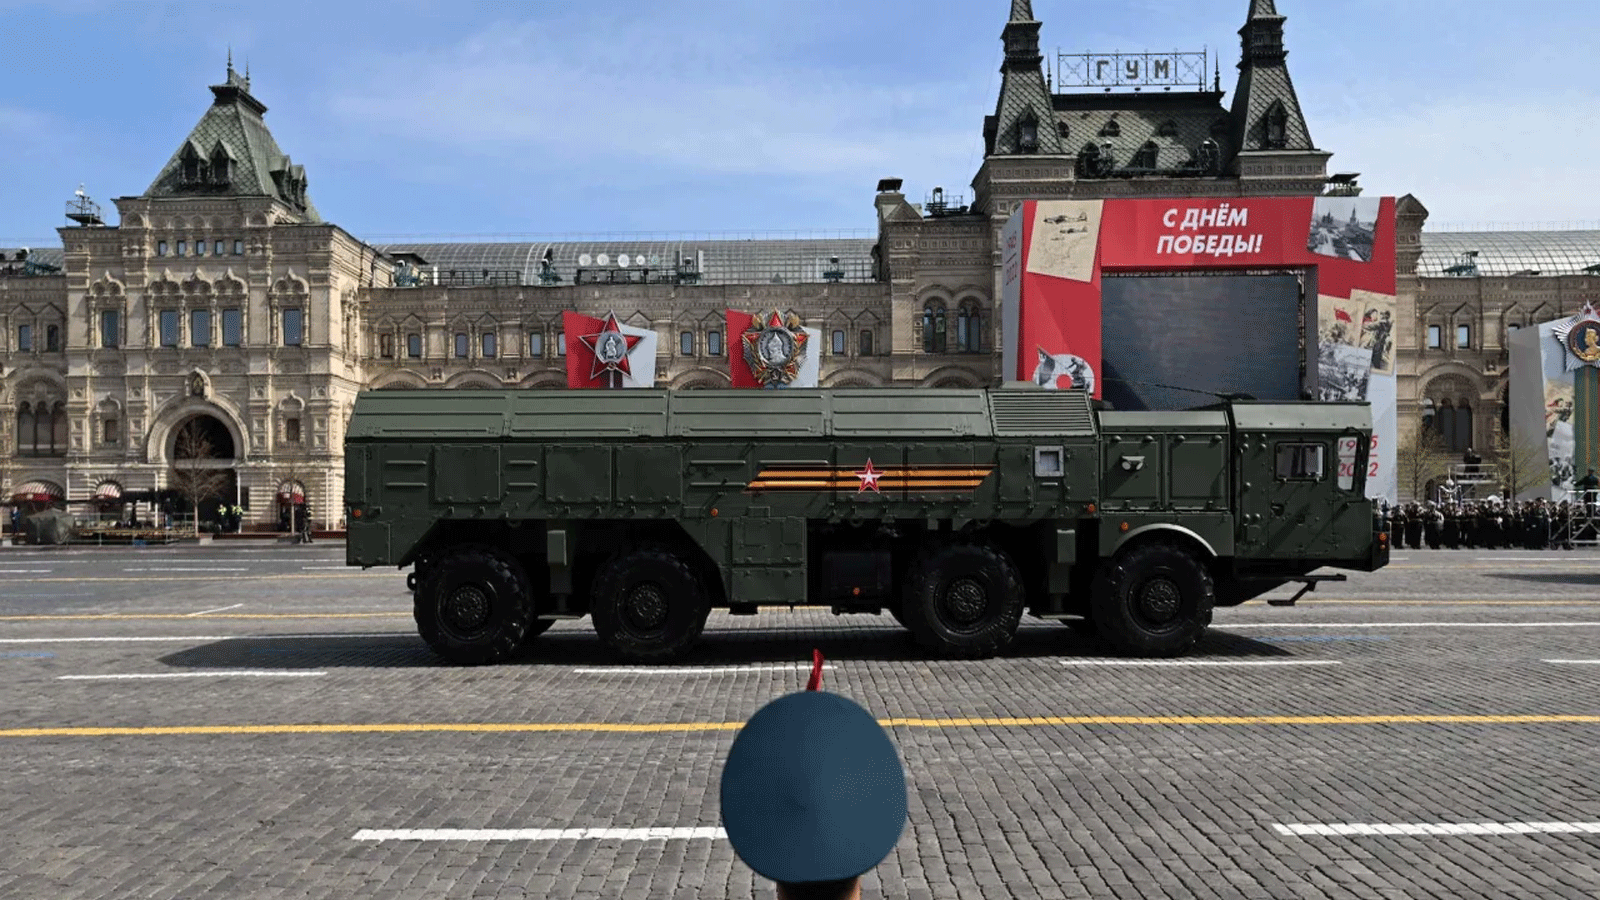 قاذفة صواريخ روسية من طراز إسكندر- M تستعرض في الميدان الأحمر خلال بروفة العرض العسكري ليوم النصر في موسكو في 7 مايو\أيار 2022